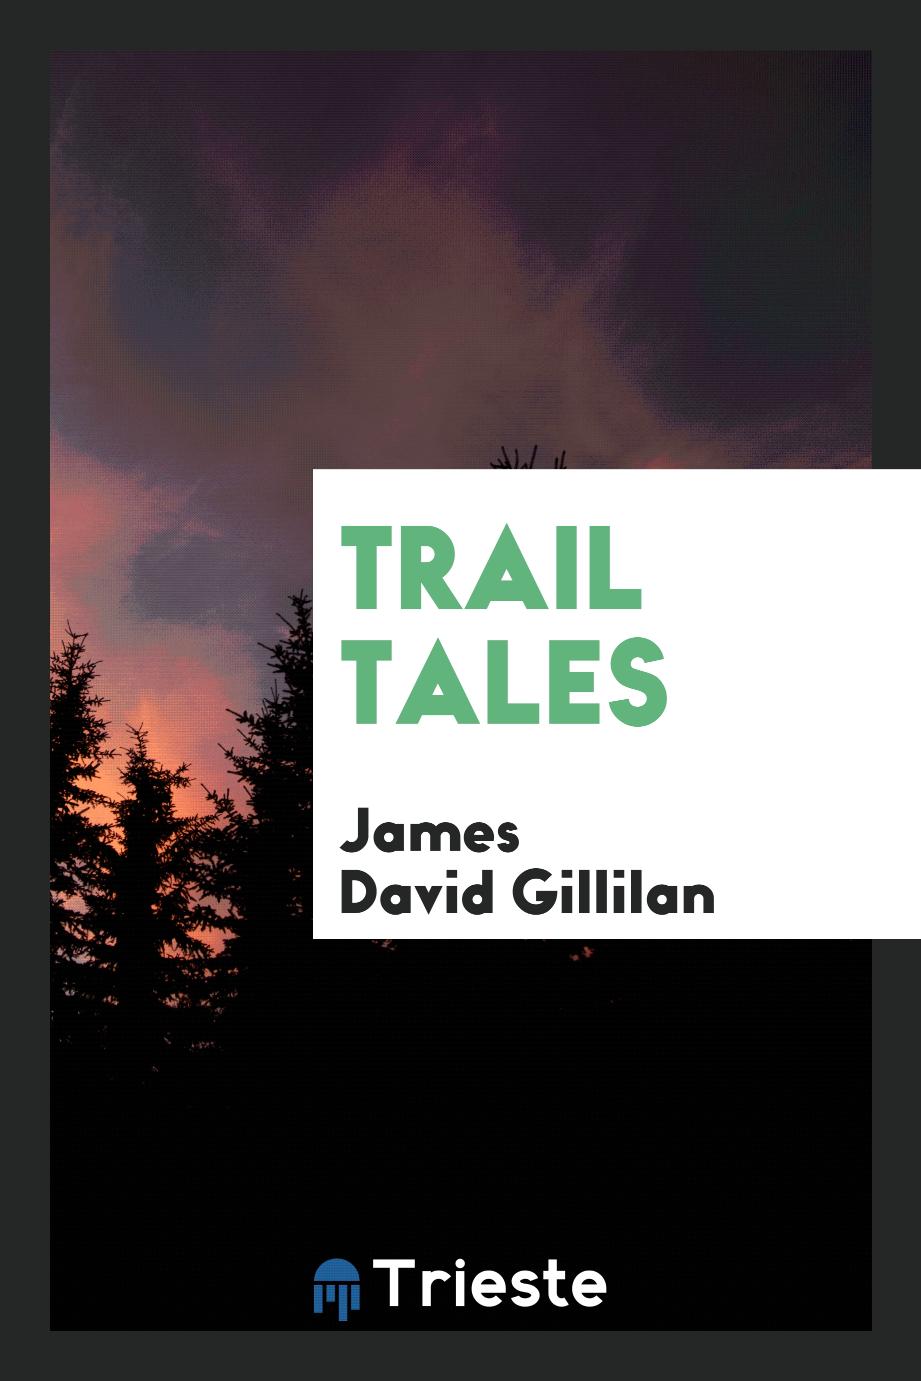 Trail tales